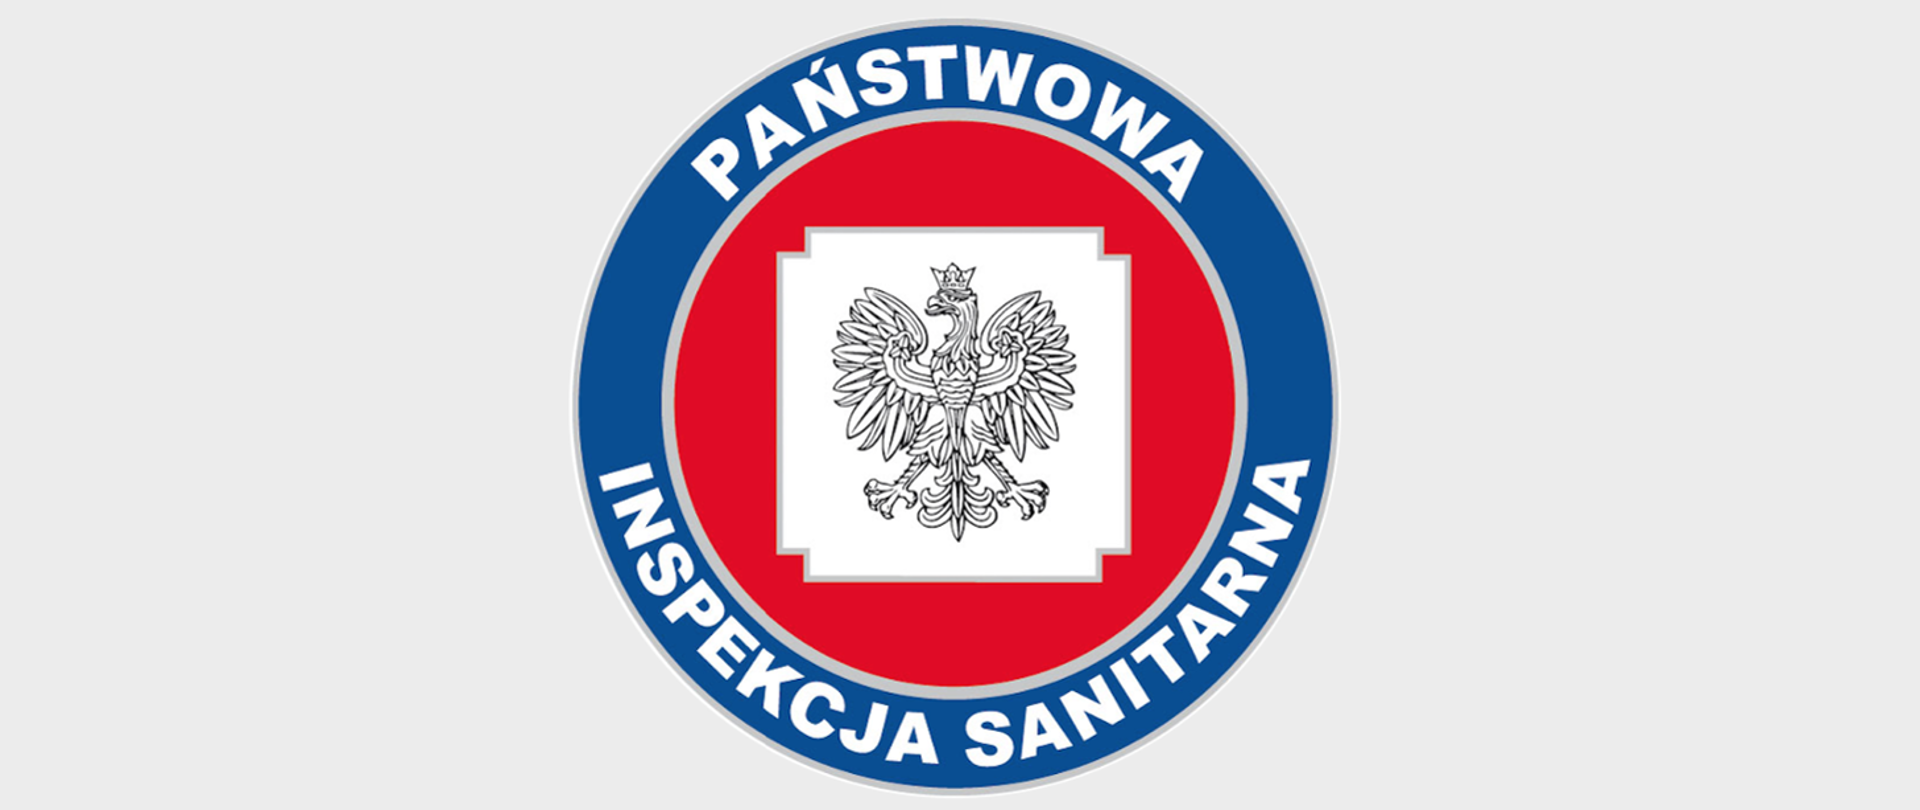 Obrazek przedstawia logo Państwowej Inspekcji Sanitarnej na której widnieje godło w czerwono niebieskim okręgu. 